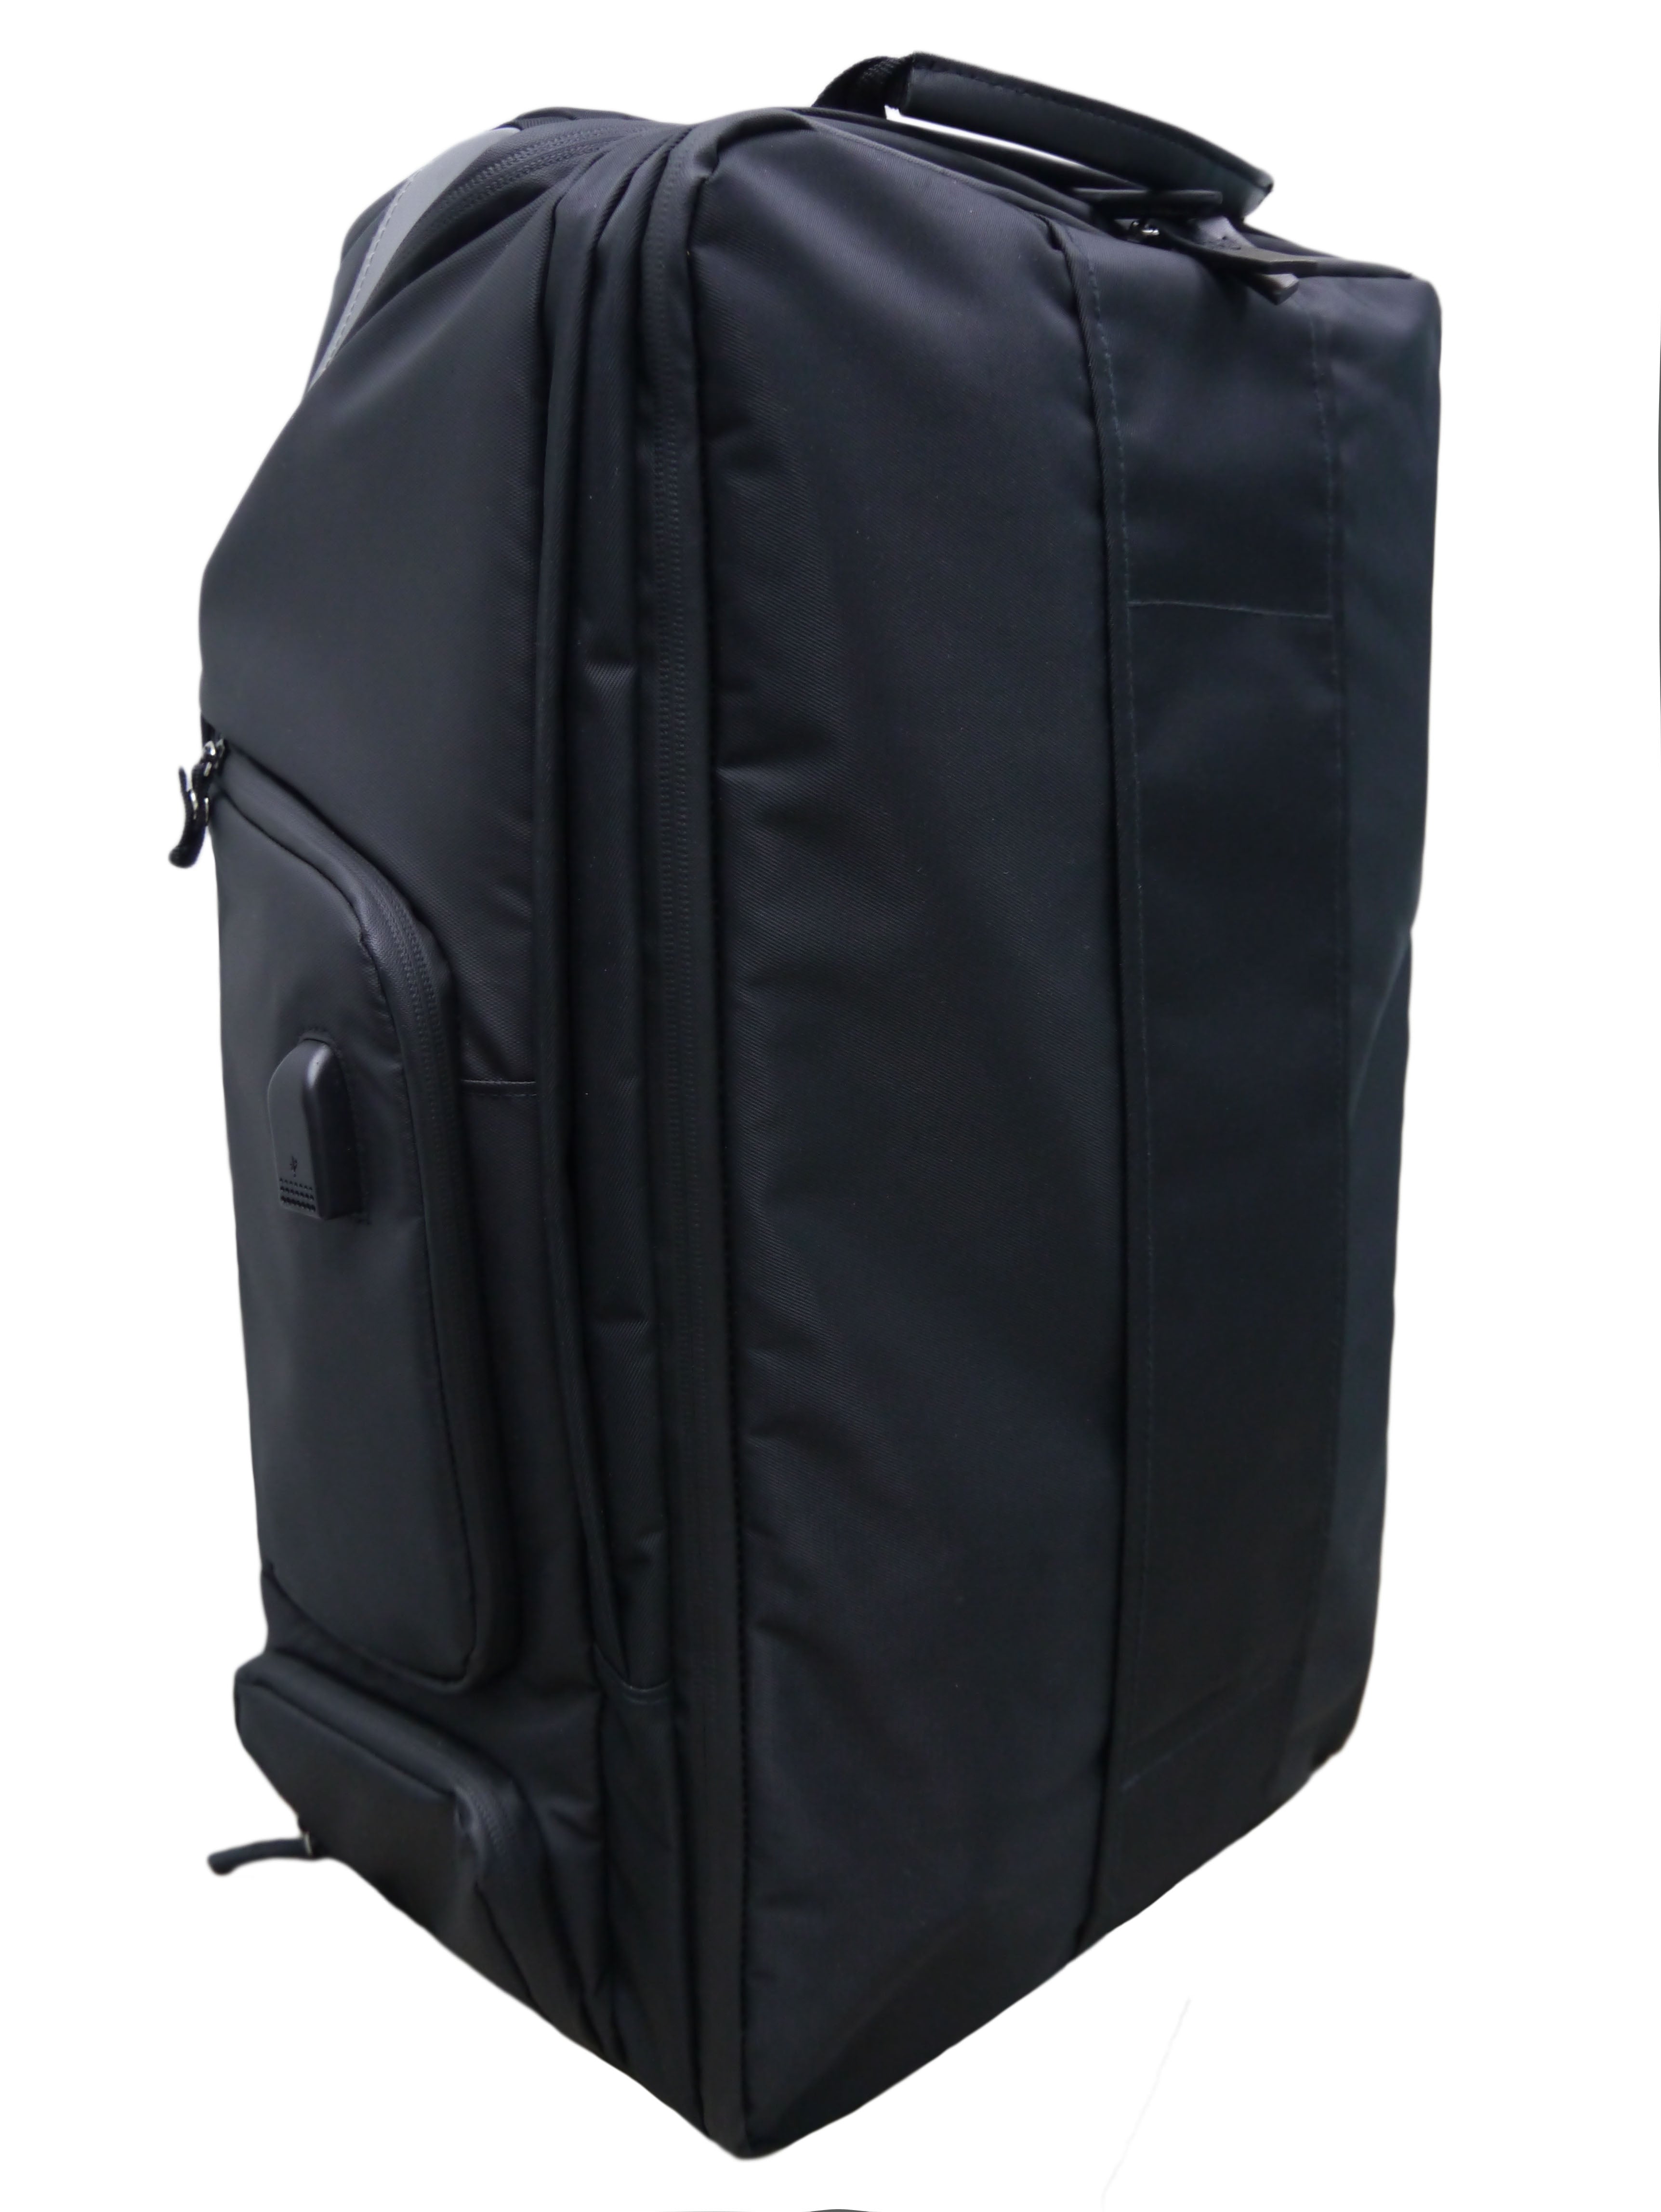 Instinct 35L Gym/Travel Backpack